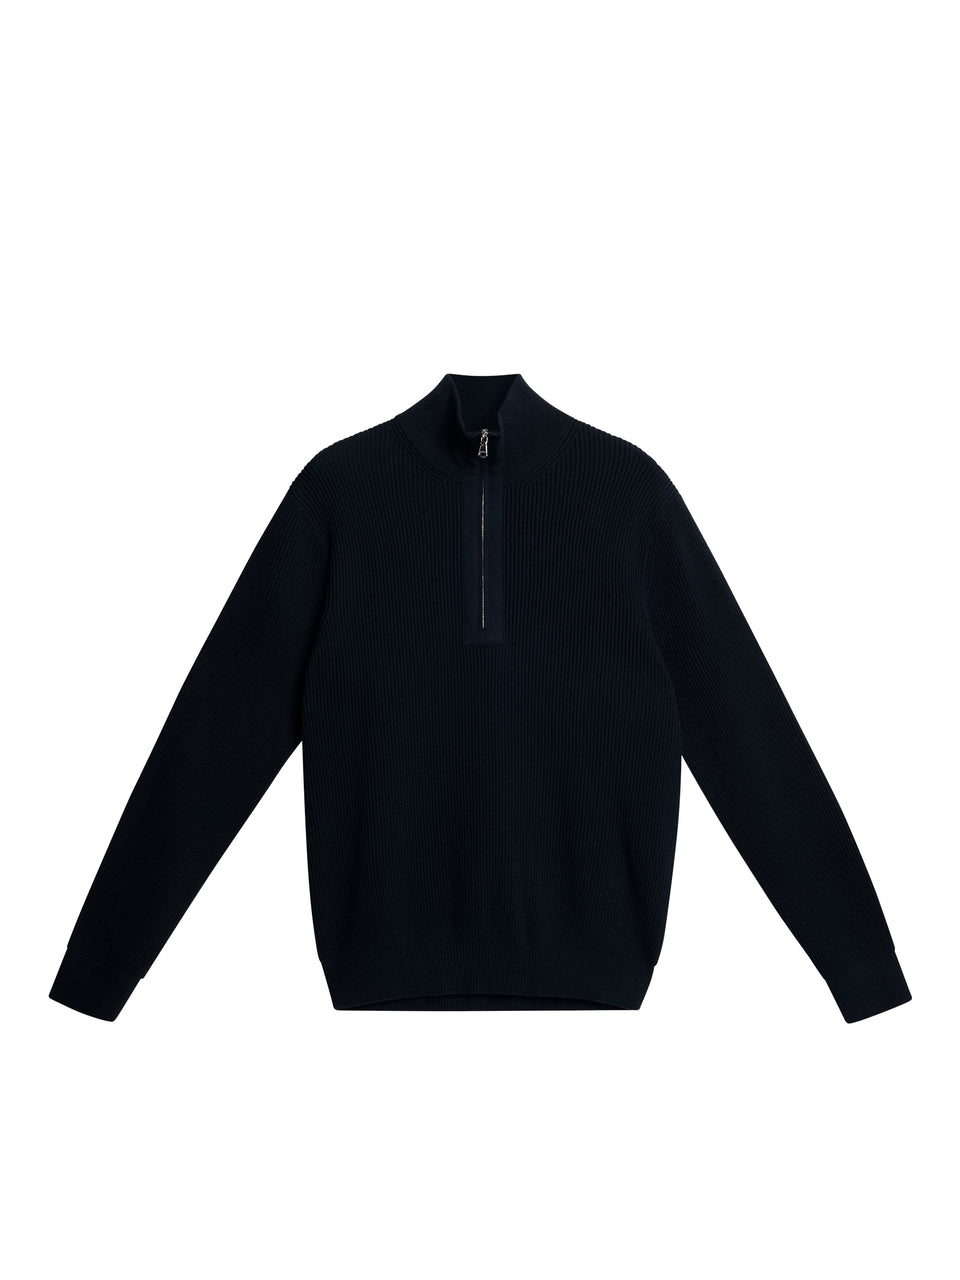 Alex Half Zip Knitted Sweater / JL Navy